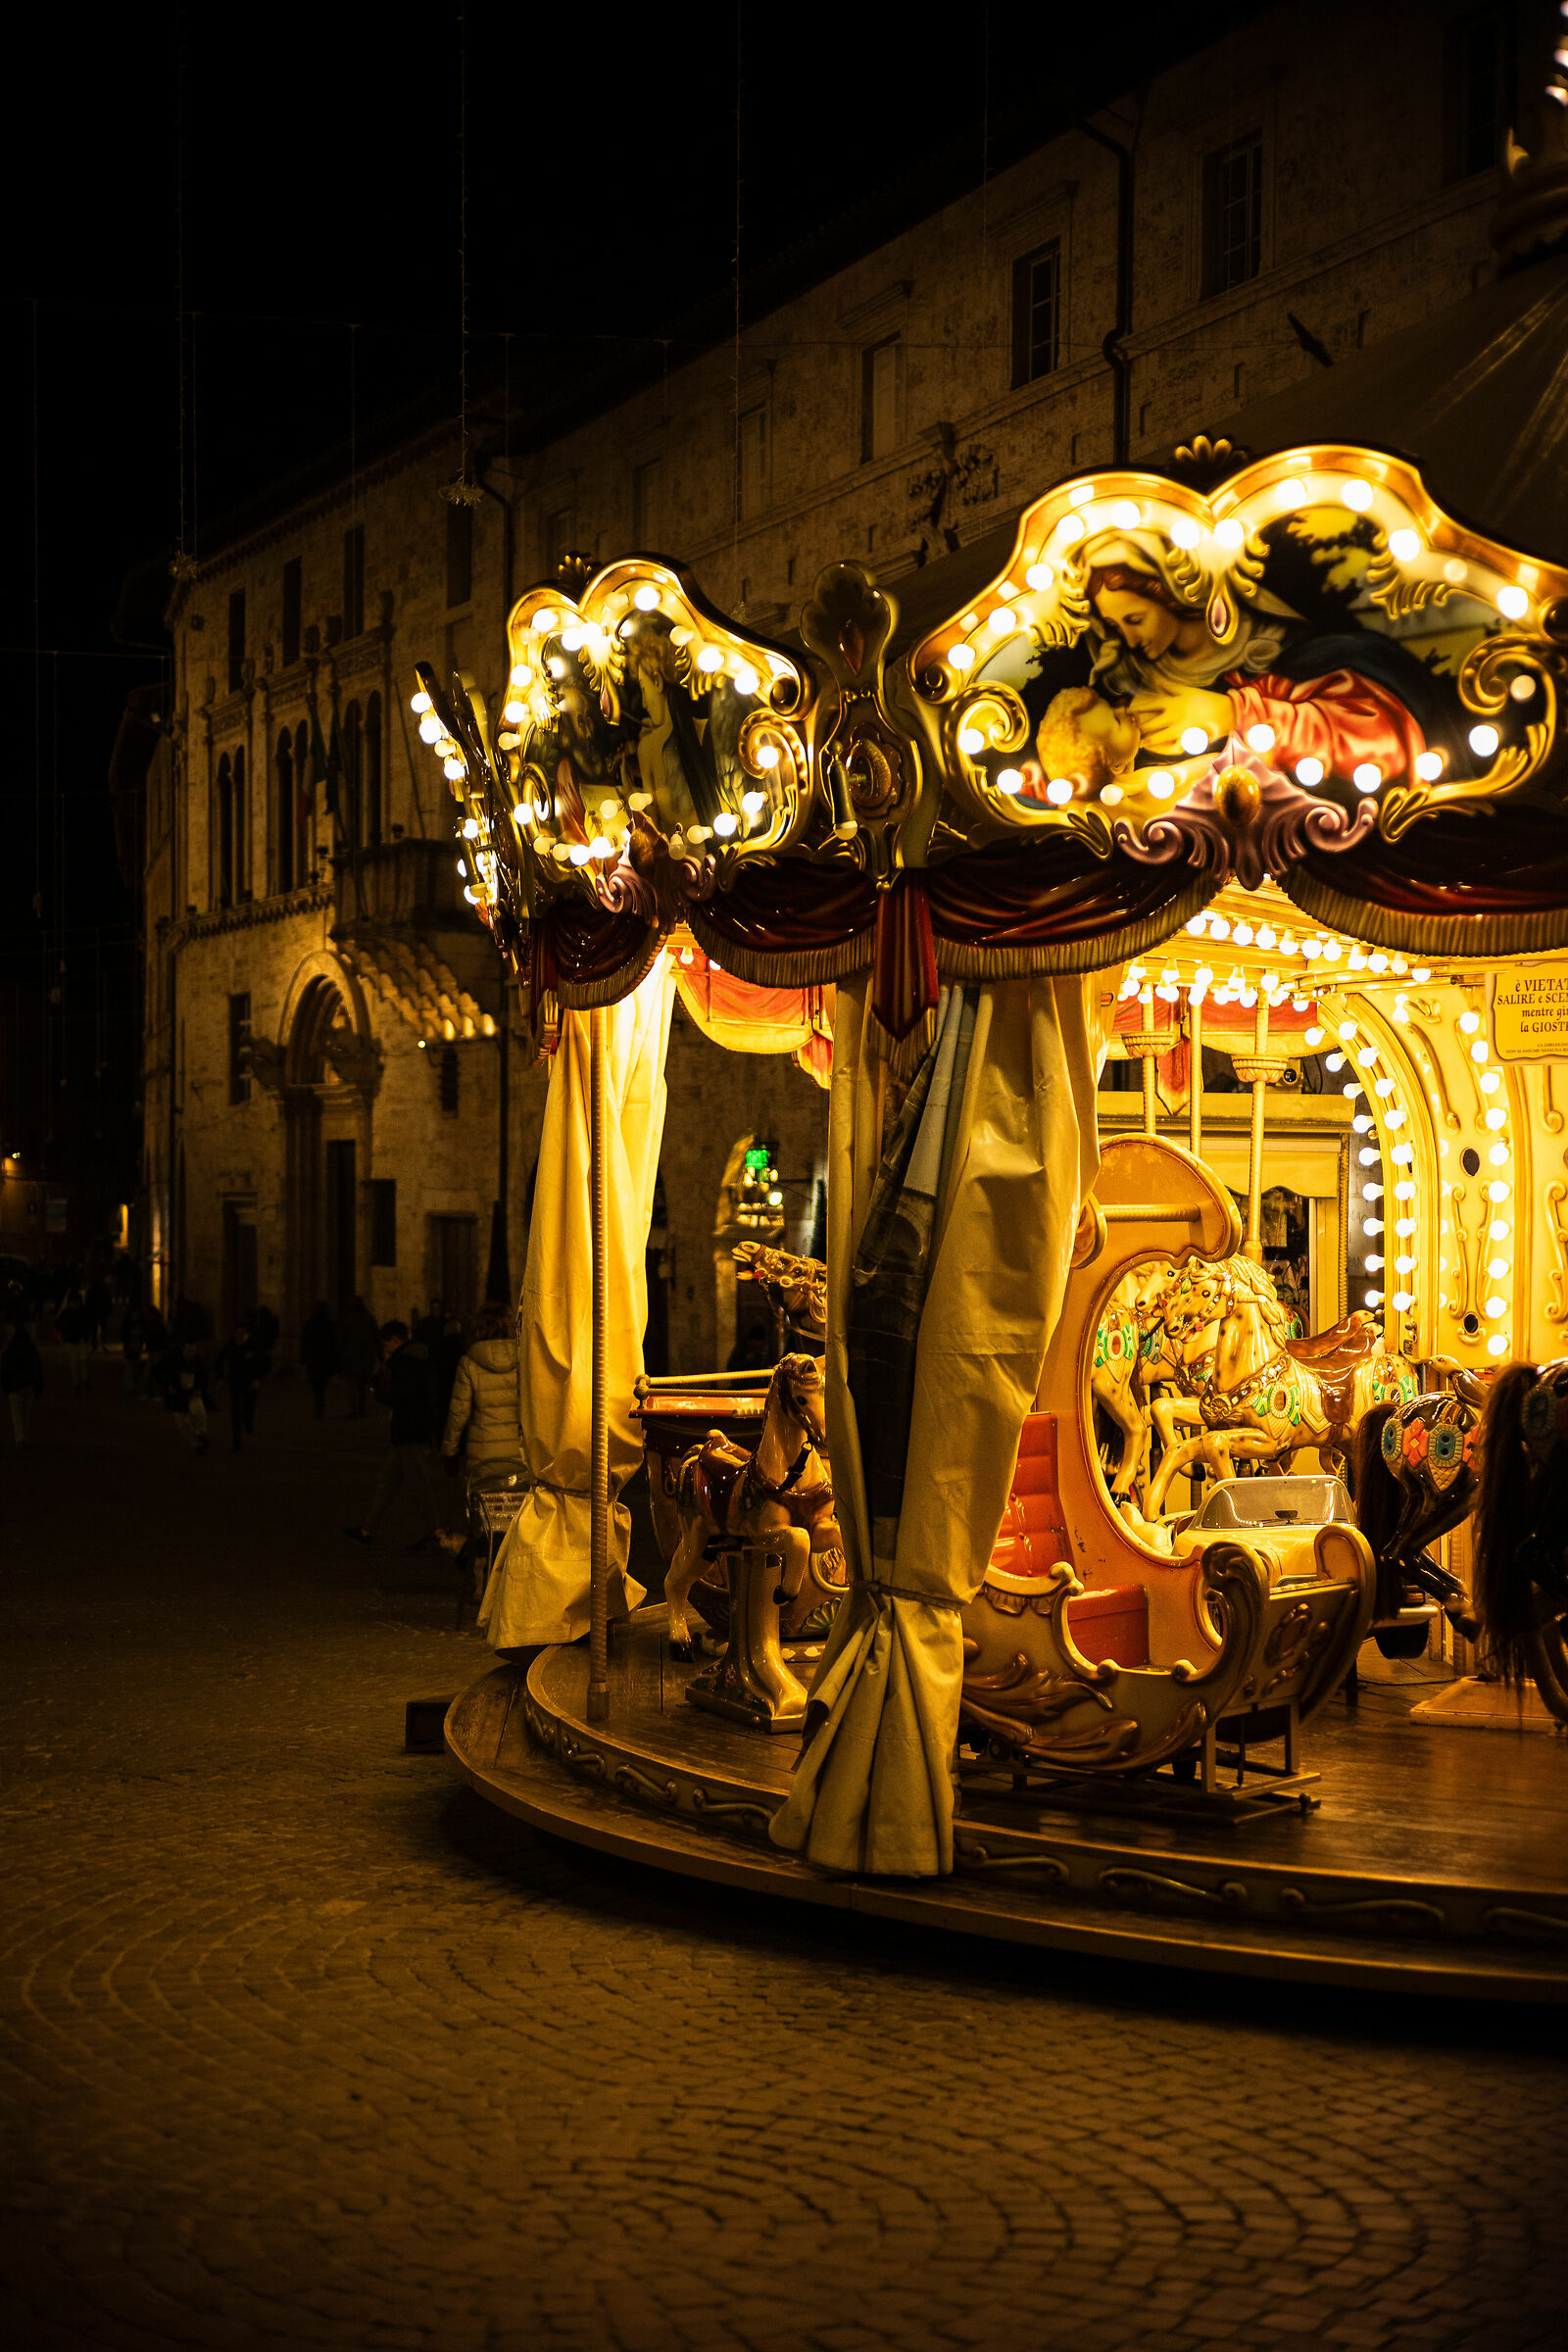 Carousel carousel at night in Perugia ...